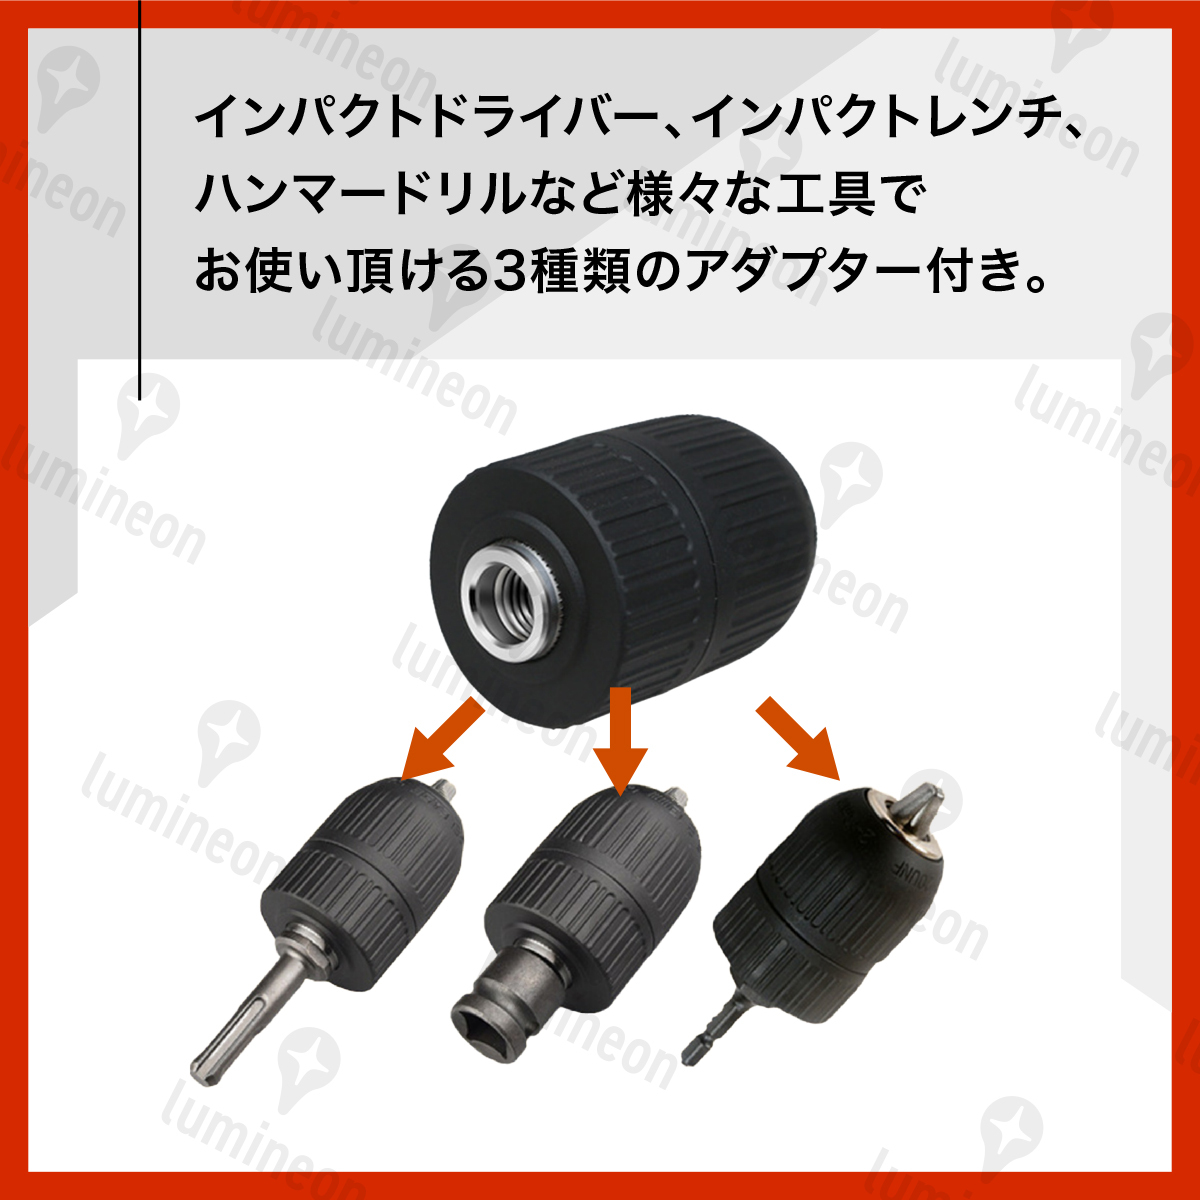 ドリル チャック キーレス 2〜13mm 3種変換アダプタ セット 六角軸 SDS軸 1/2 インパクトドライバー アダプター 電動ドライバー g194b 1の画像3